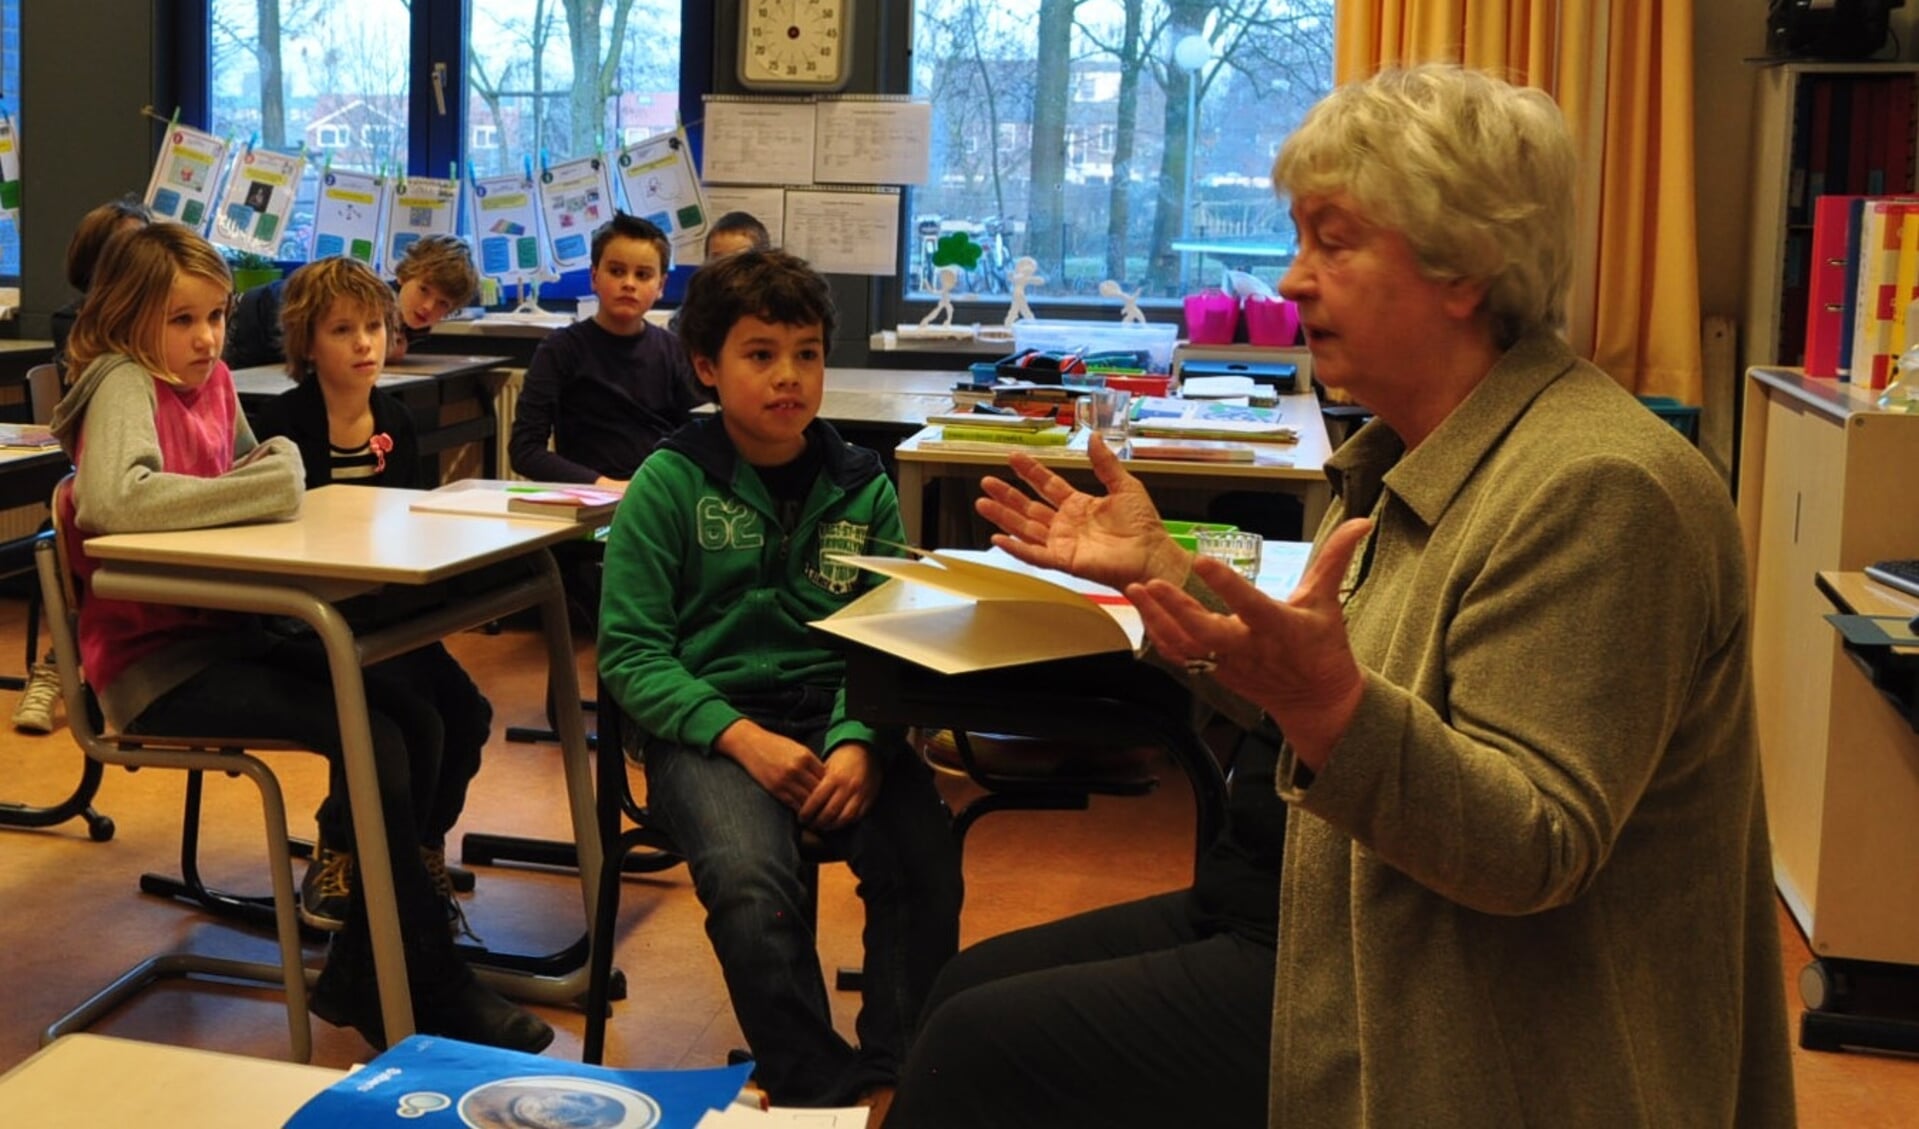 Aantje leest haar eigen geschreven verhaal Rigoberta over Fairtrade voor. 